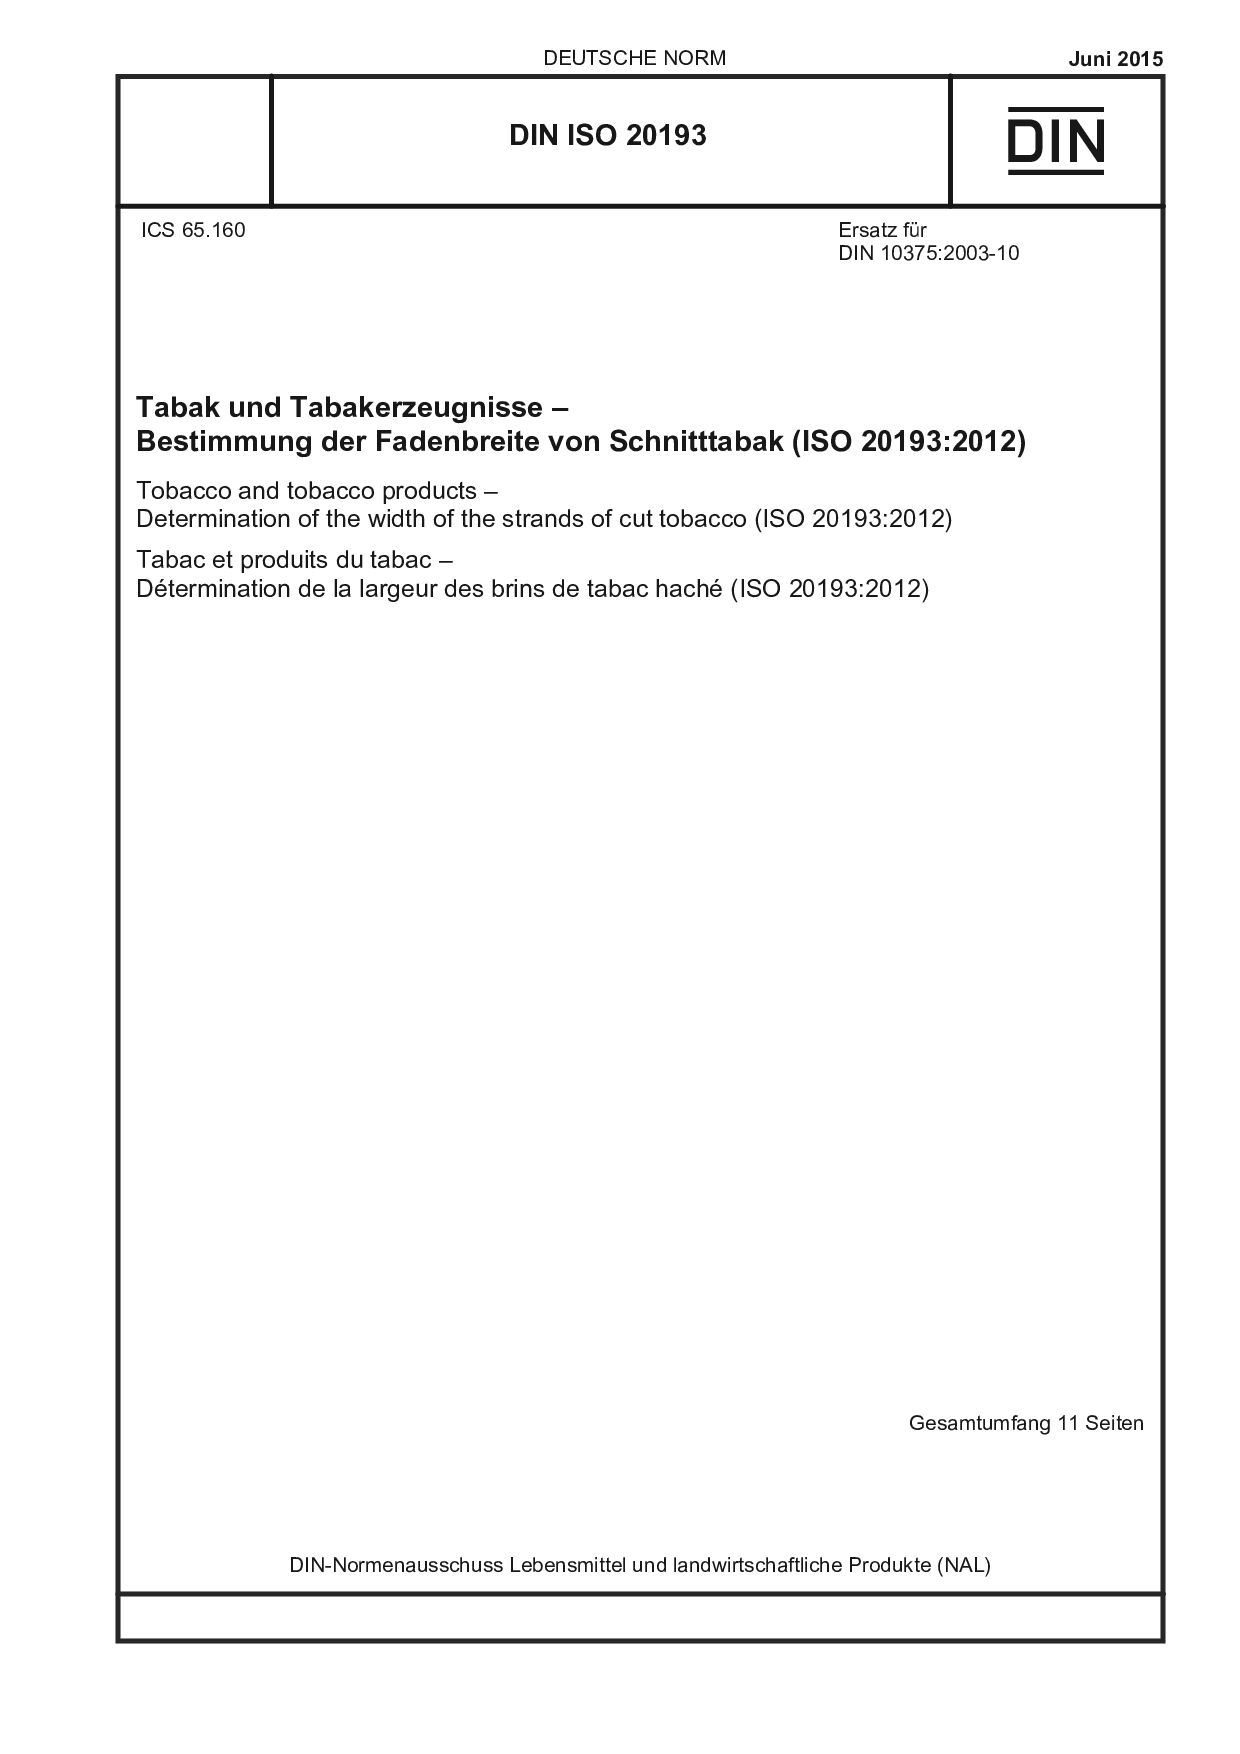 DIN ISO 20193:2015封面图